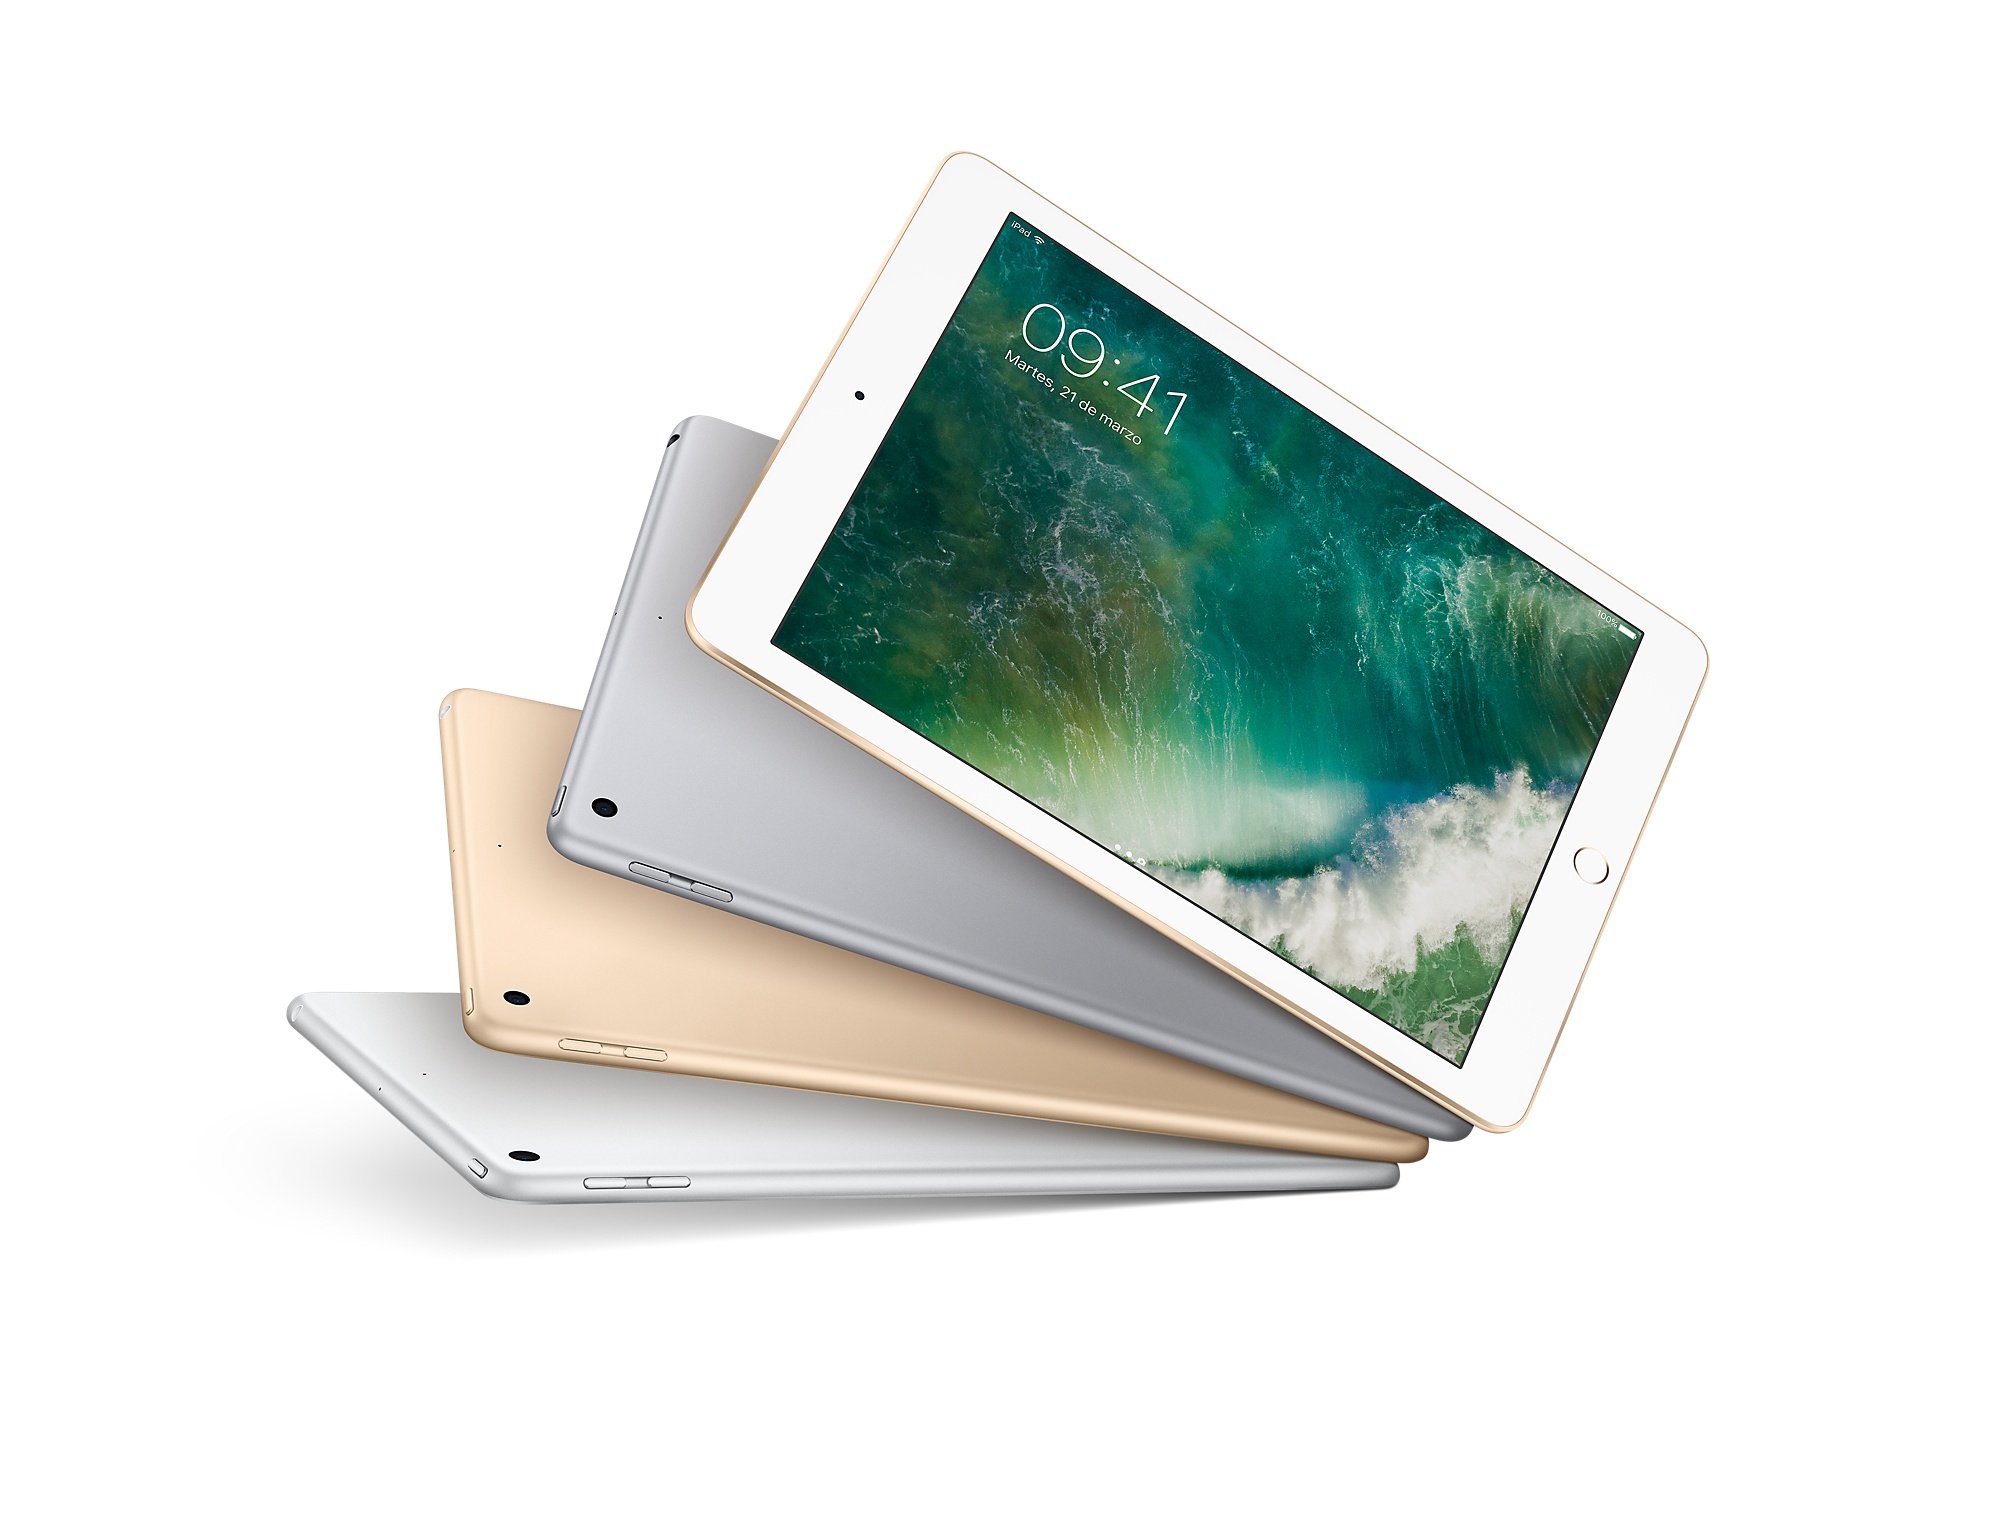  Apple lanza iPad más barata en su historia